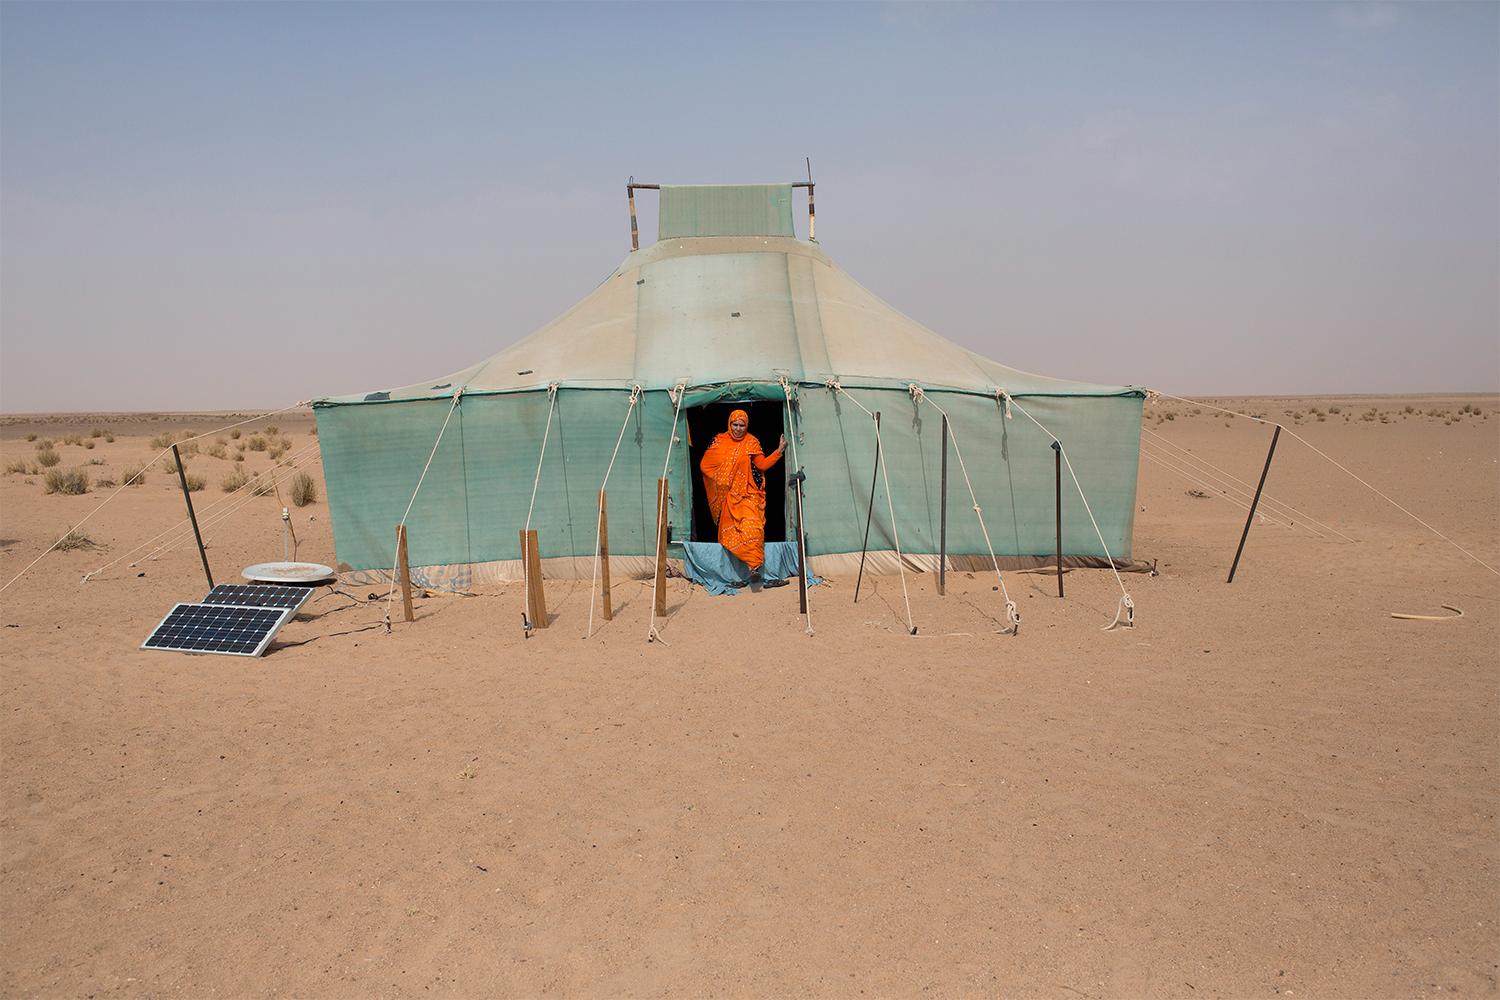 Aum Kalfum, 61, bor med sin familj som nomad nära Mijek, en stad i den befriade delen av Västsahara som kontrolleras av Polisario. ”Oavsett hur hårt livet här är, så lever jag hellre här än i flyktinglägren”. Foto: Johan Persson